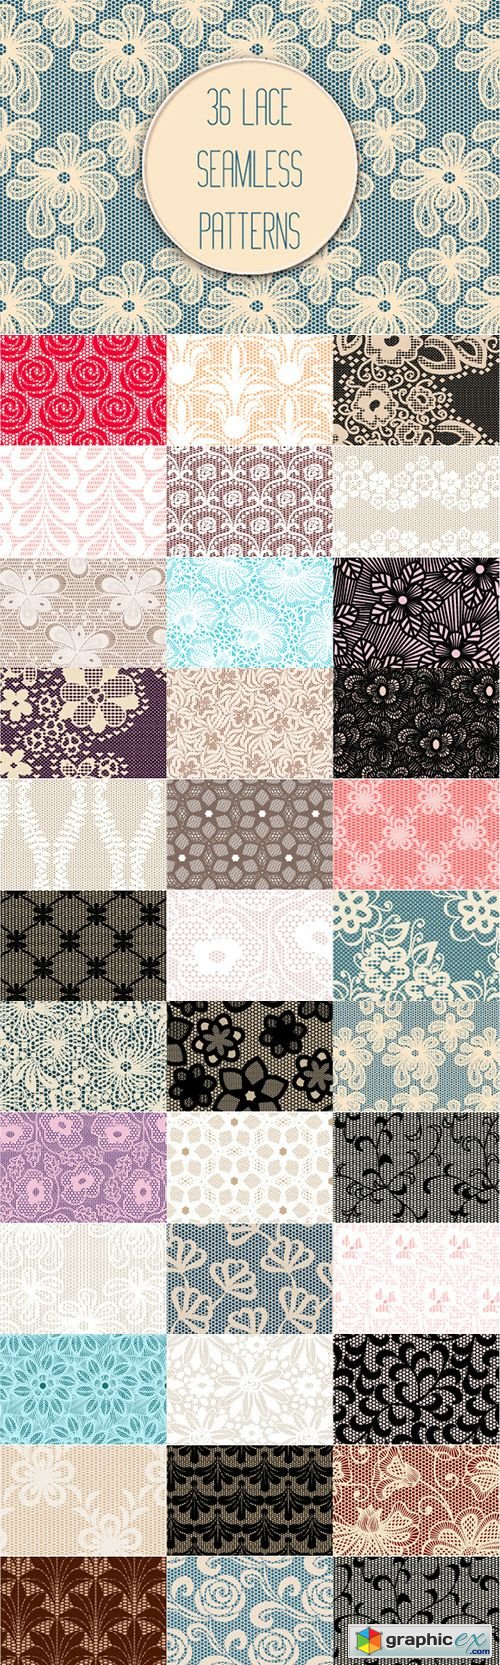 Set of 36 Lace Seamless Patterns